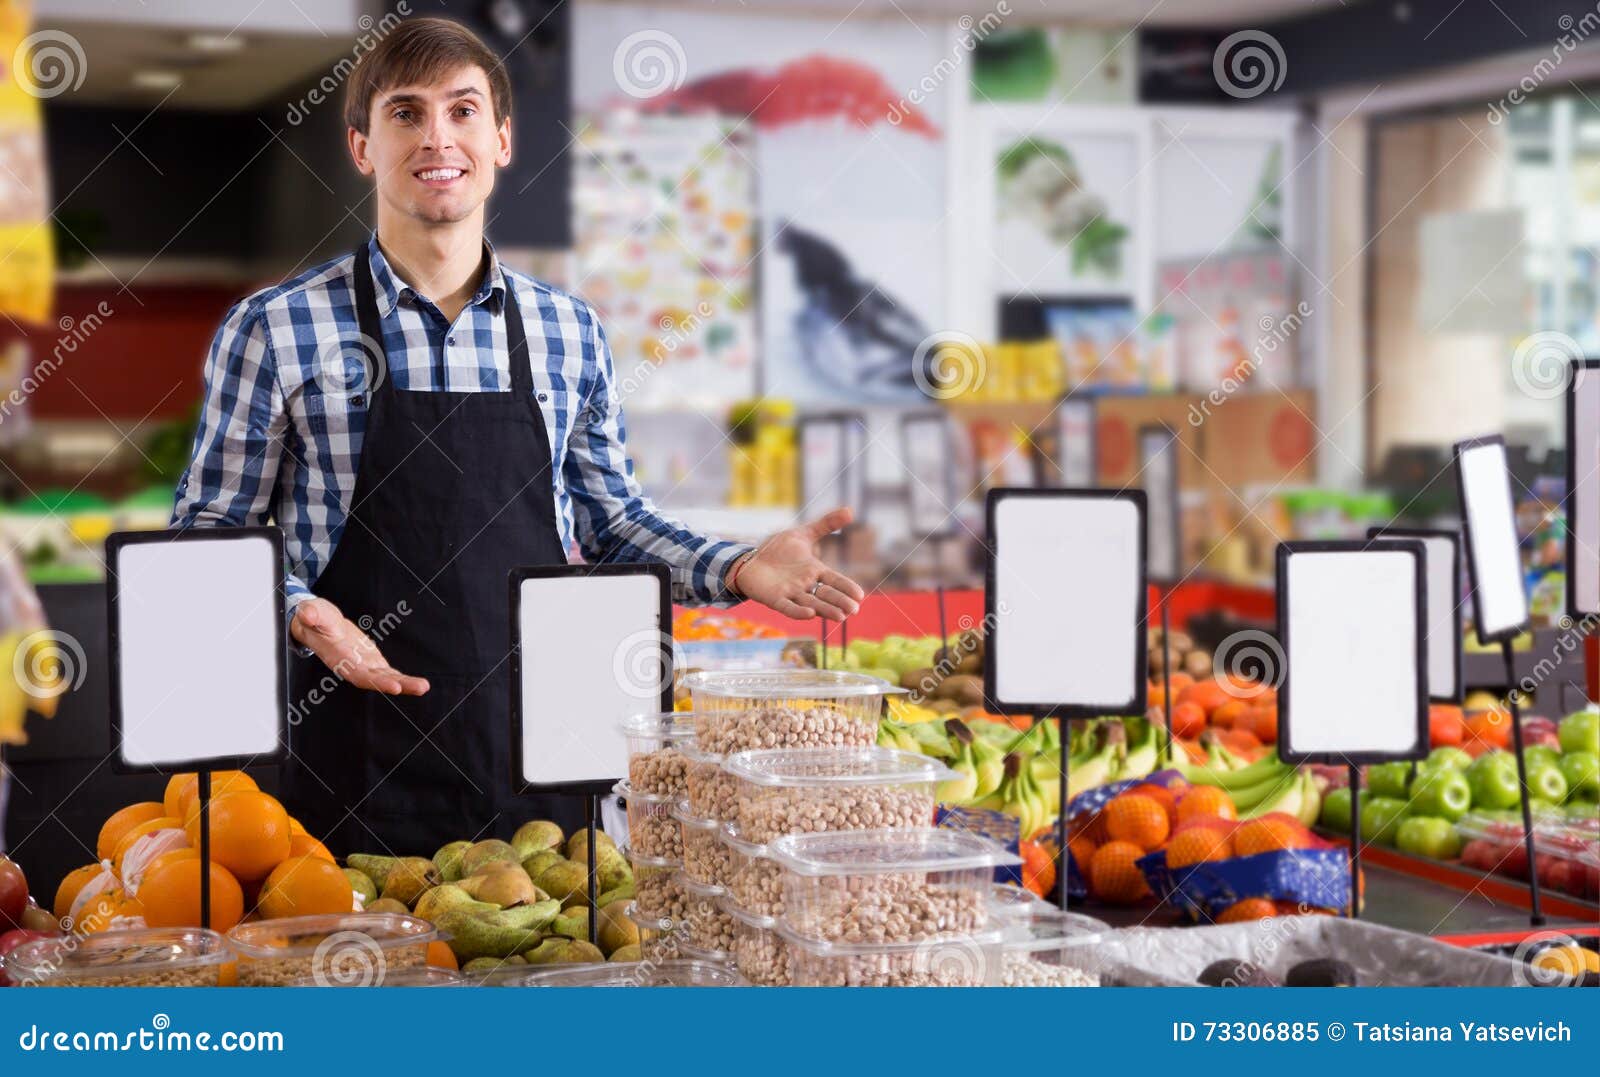 Москва продавец фруктов. Продавец фруктов. Продавец фруктов мужчина. Парень продавец в магазине фрукты фото. Продавец мужчина фото.